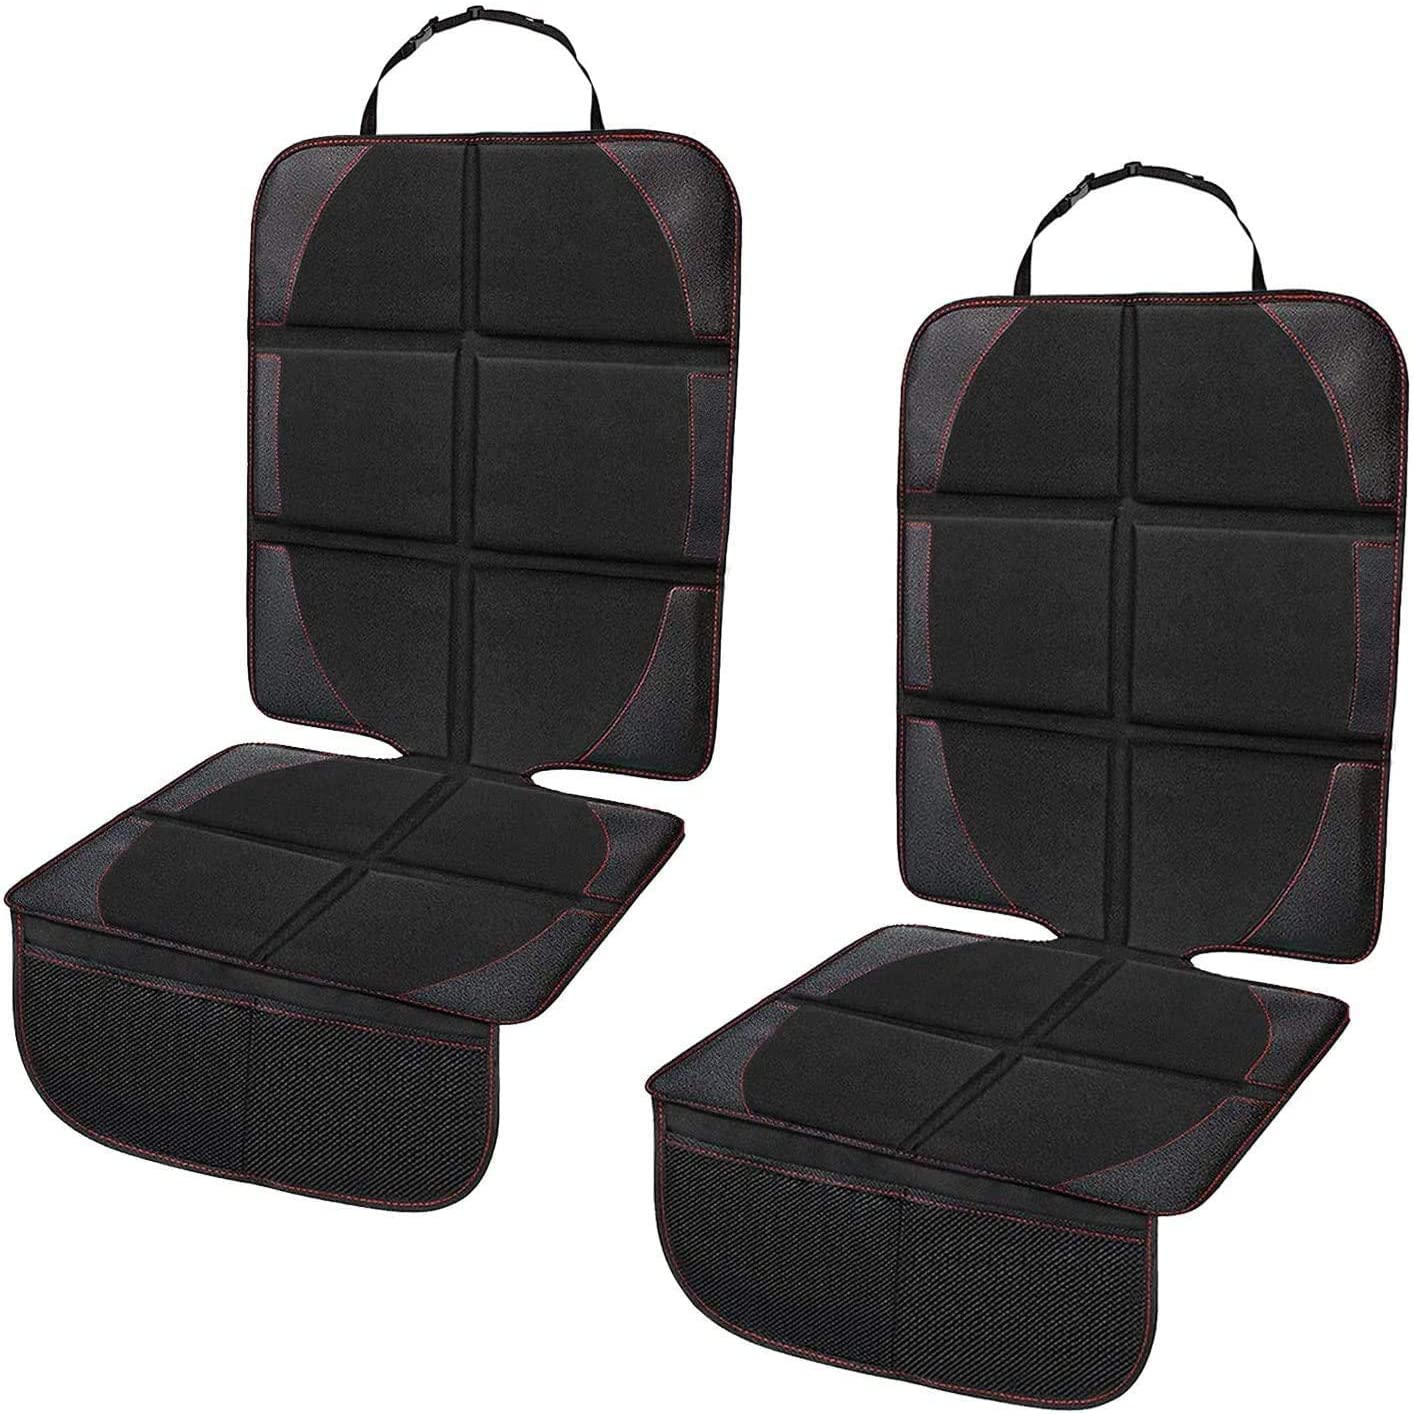 Защитные чехлы для автомобильных сидений, 2 шт. в упаковке, защитные чехлы для детских автокресел с карманами-органайзерами